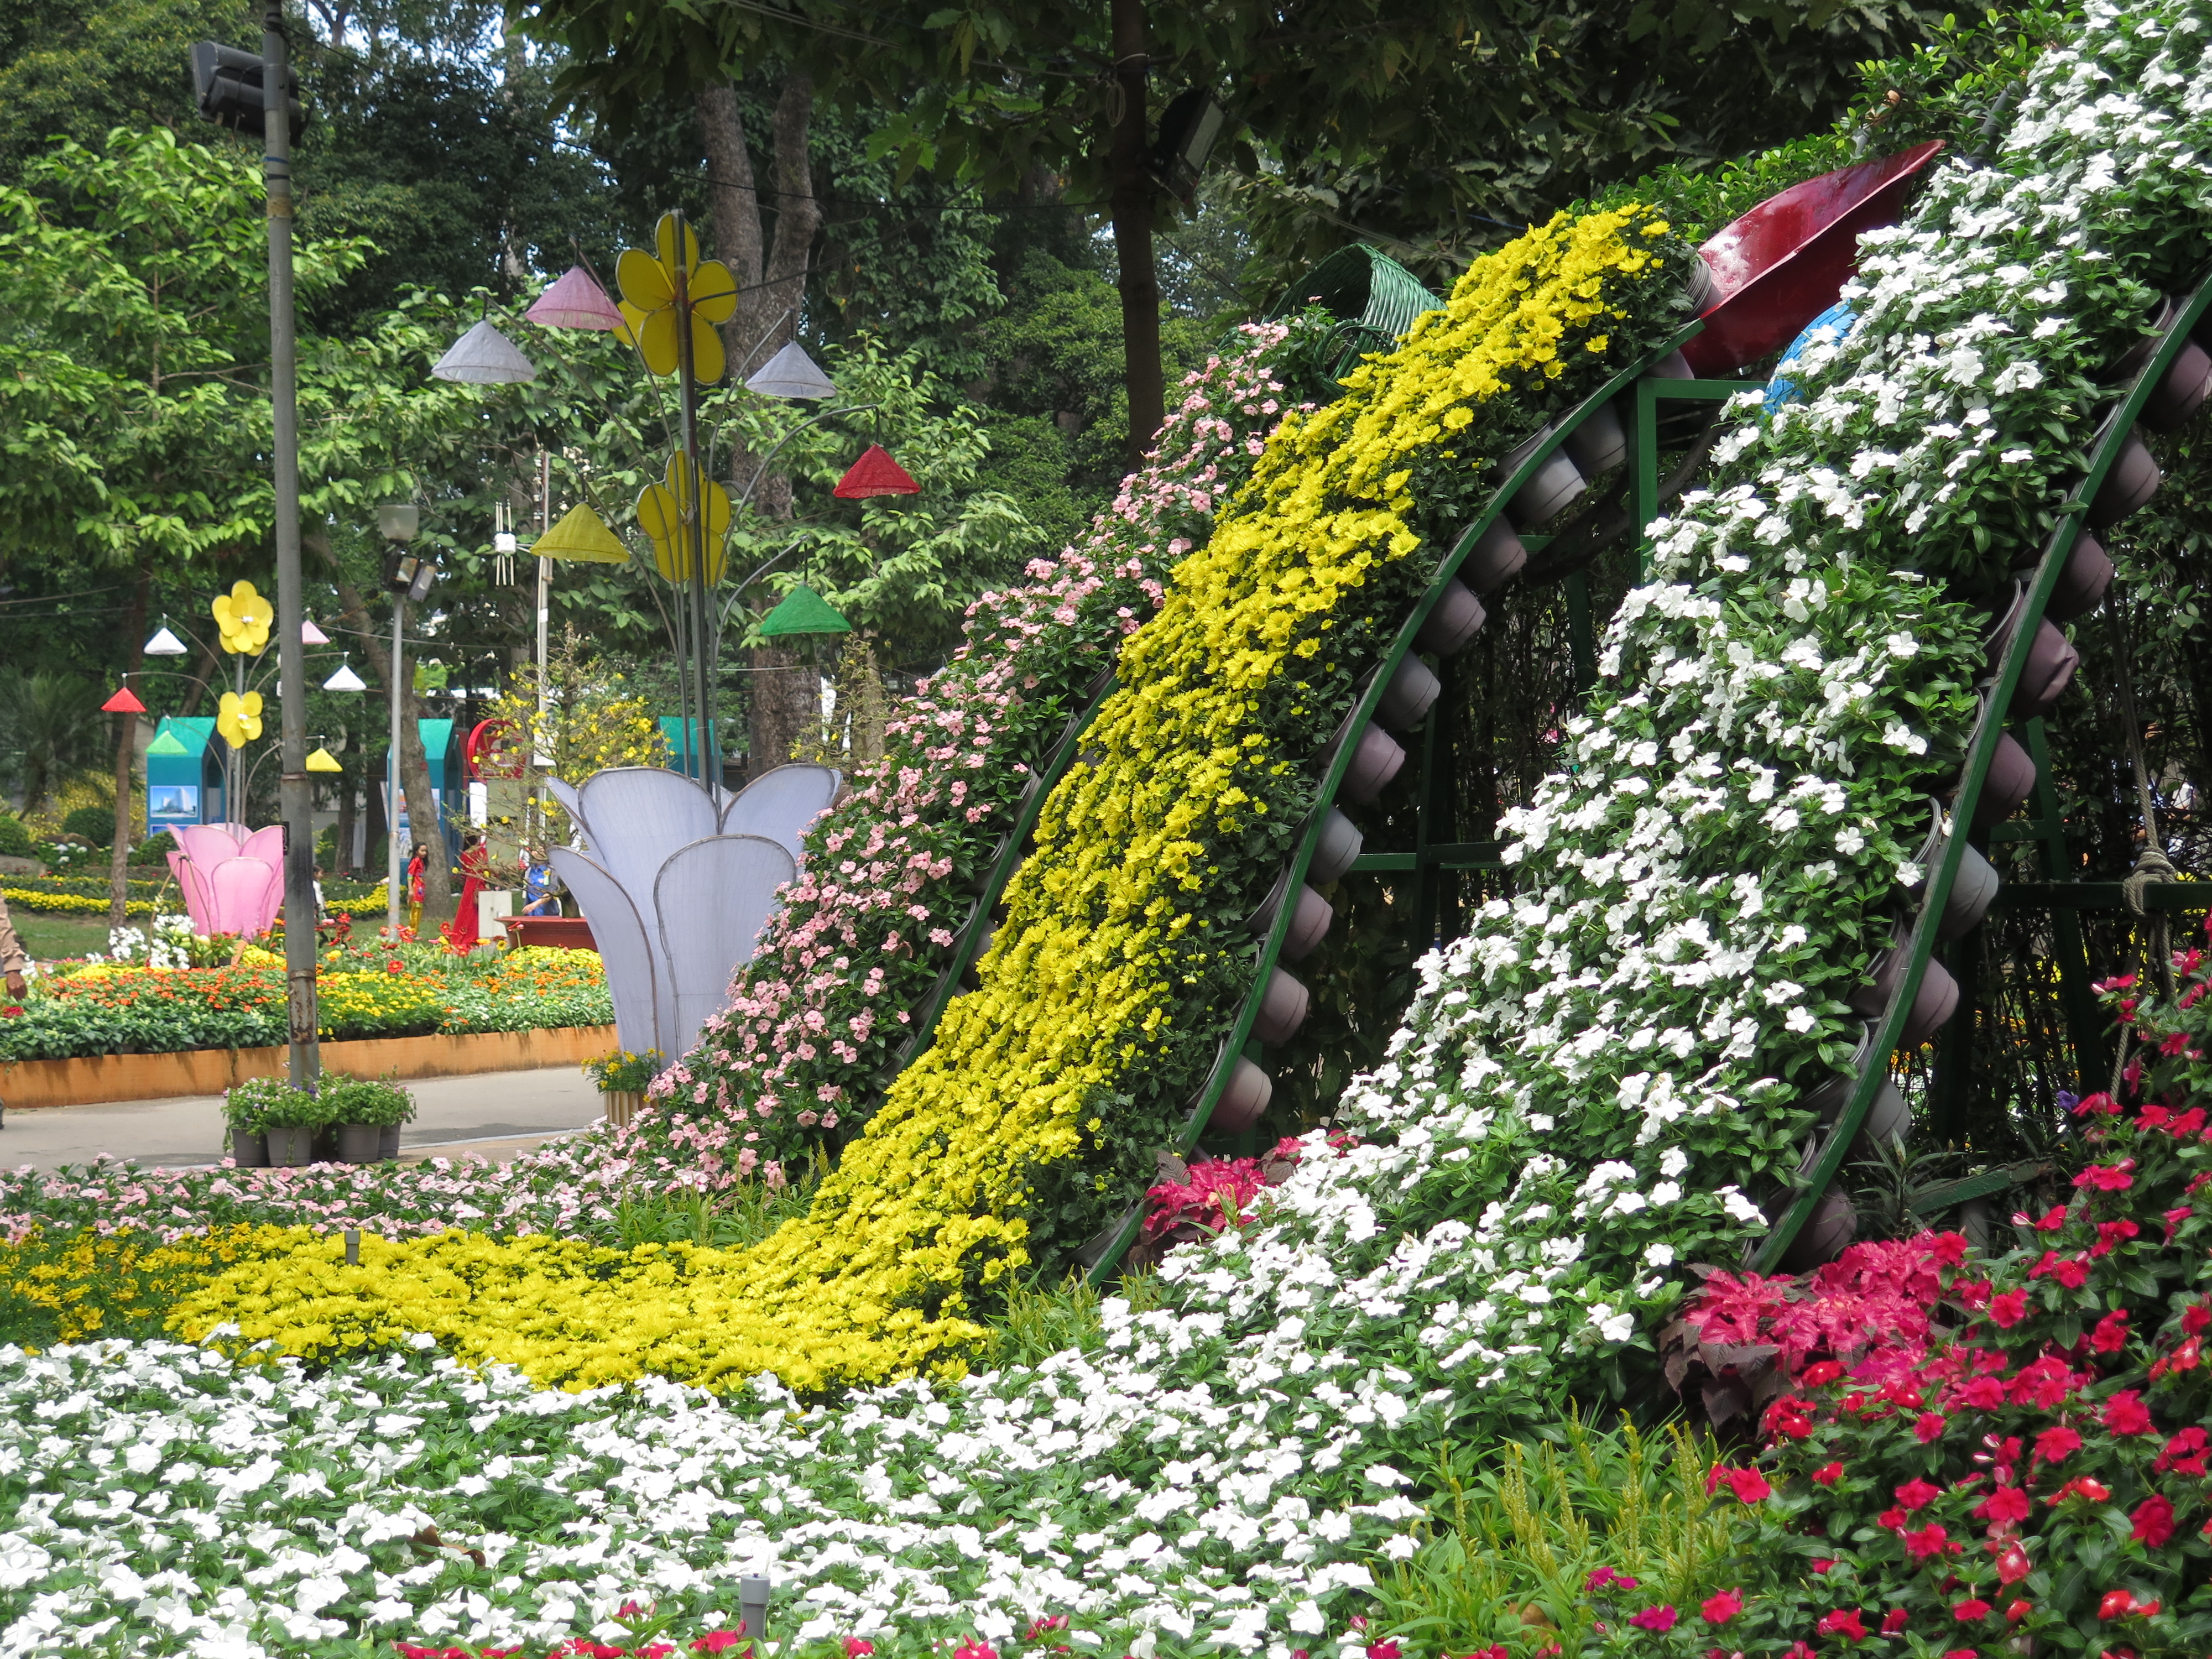 Hội Hoa Xuân - một sự kiện văn hóa đặc sắc được tổ chức hàng năm tại Việt Nam. Tại đây, bạn không thể nhận được gì ngoài những trải nghiệm tuyệt vời, những mảnh trời hoa và sự đoàn kết của cộng đồng.